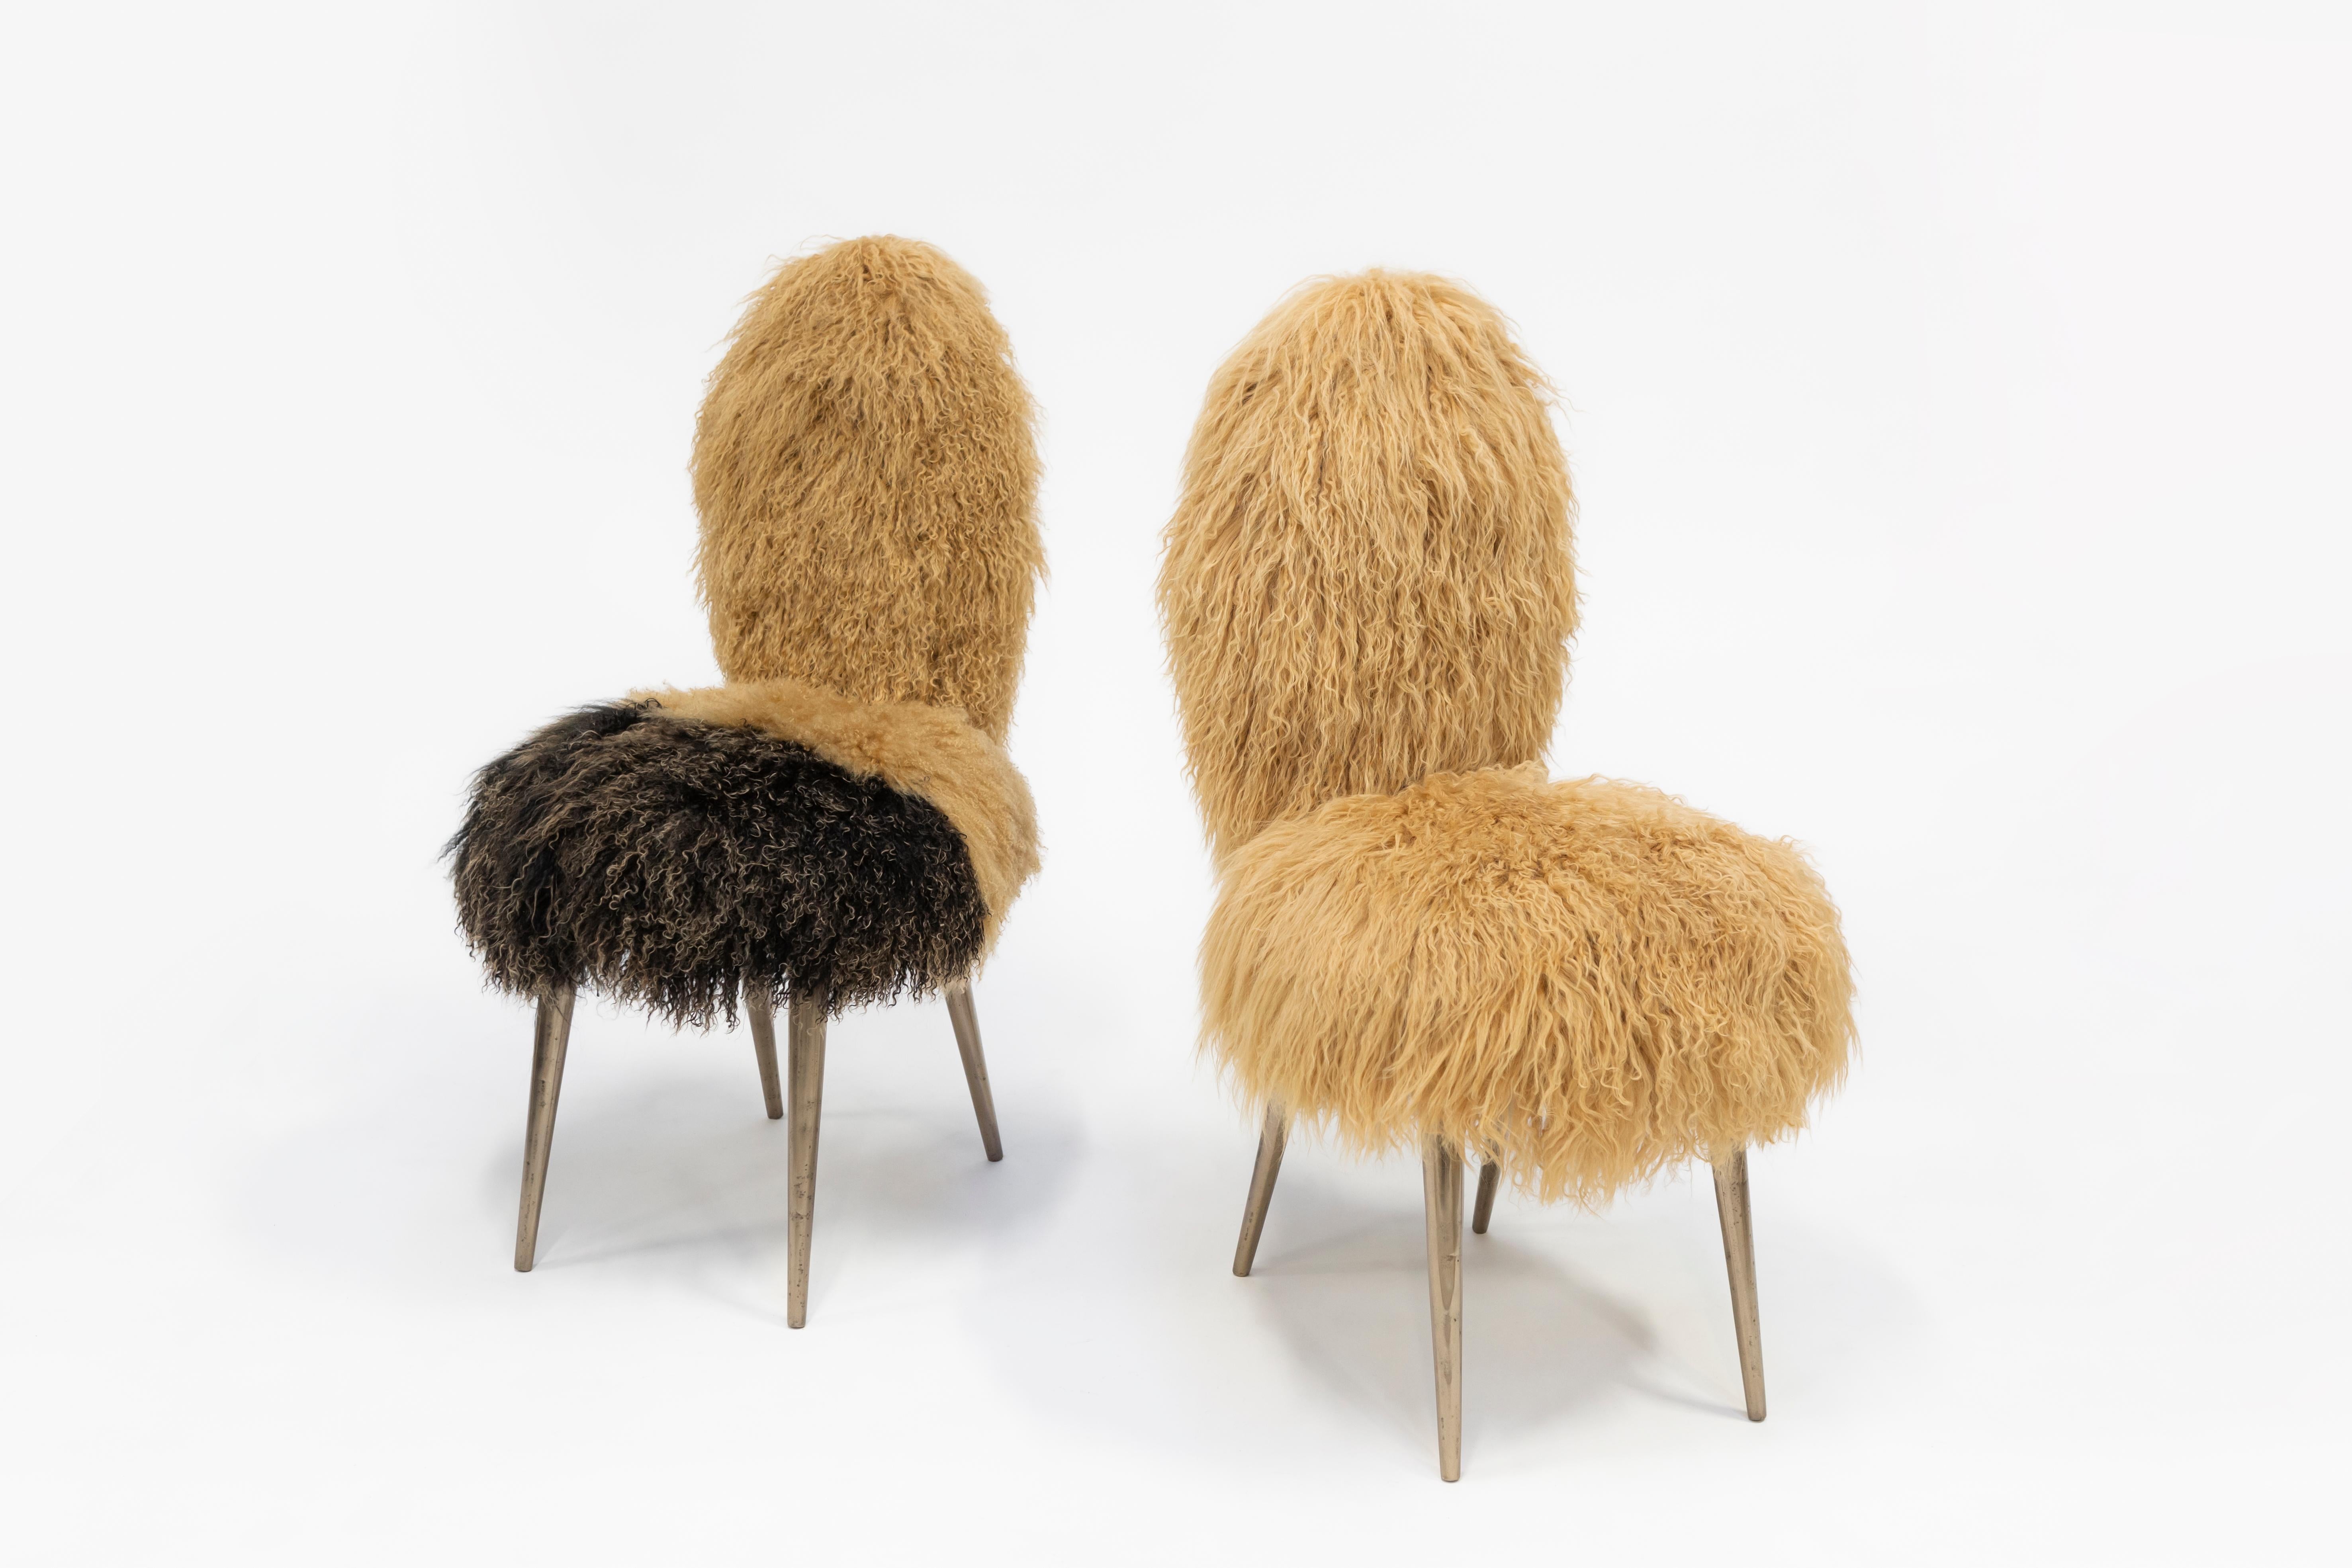 Mid-Century Modern Vintage Chairs 1950 by U. Mascagni Trasformed by Draga&Aurel, Fur, 21st Century